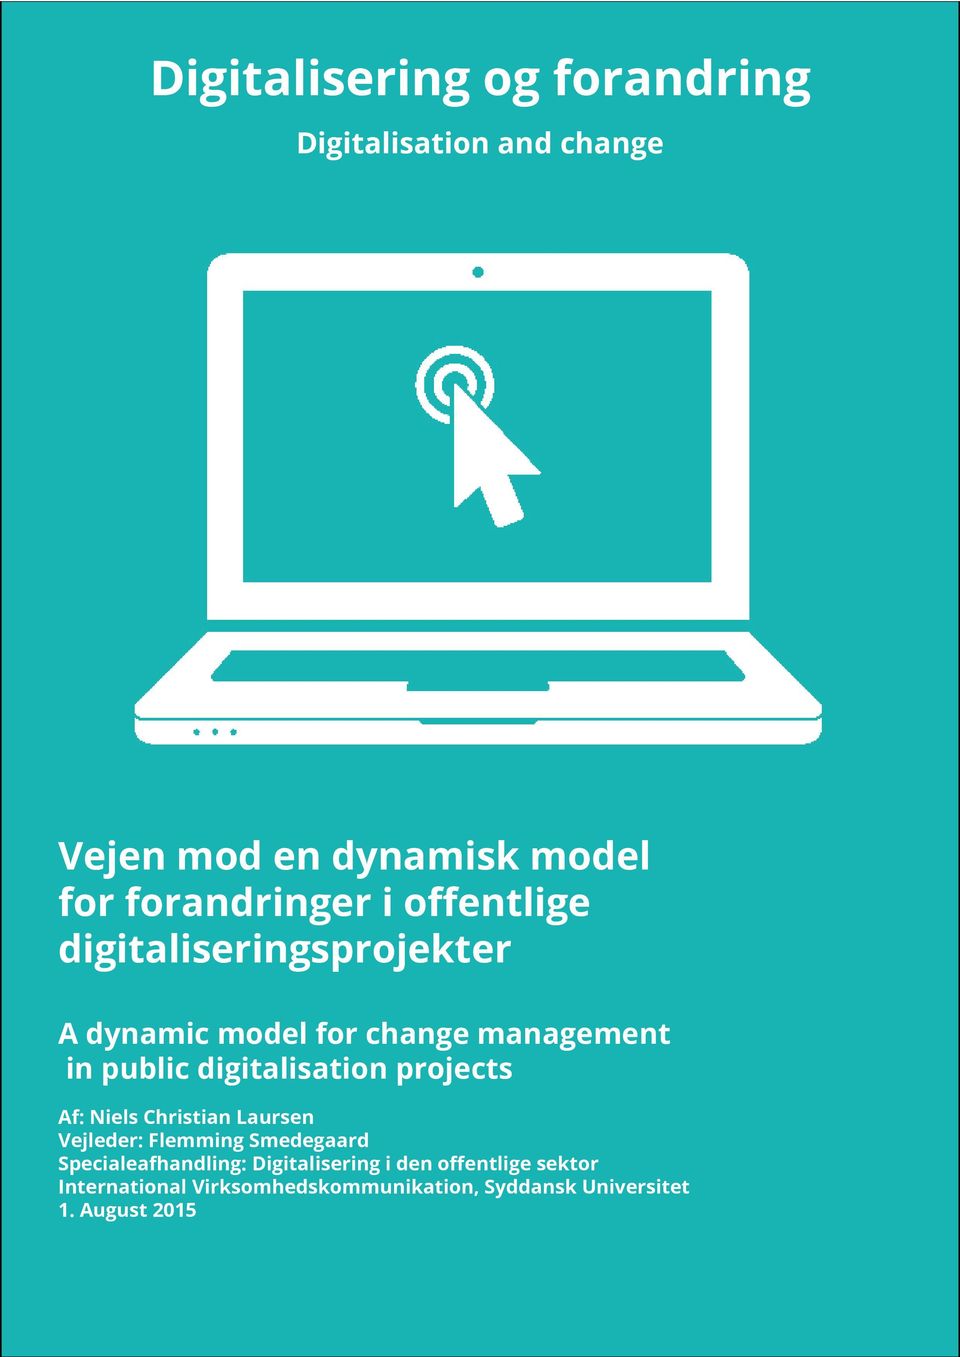 digitalisation projects Af: Niels Christian Laursen Vejleder: Flemming